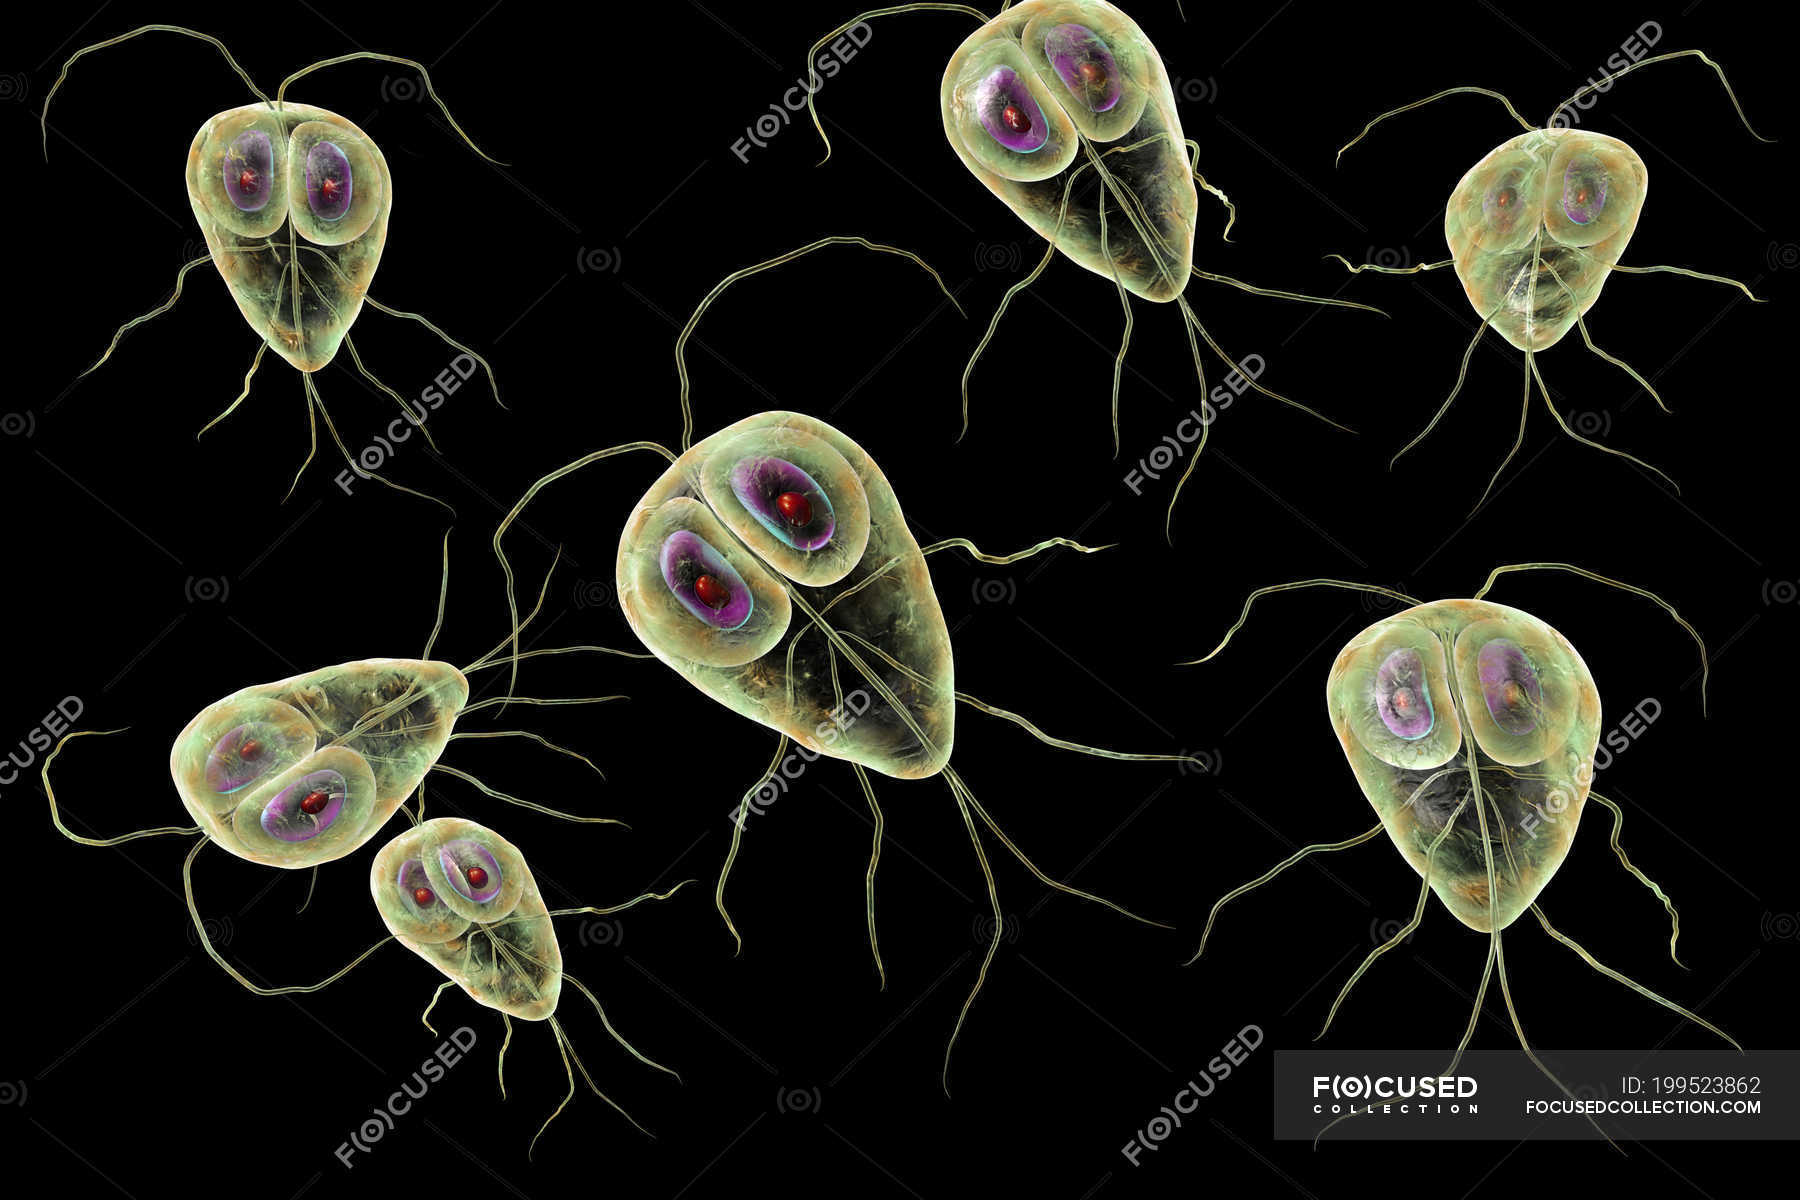 Bacteria giardia en humanos, Hozzászólás